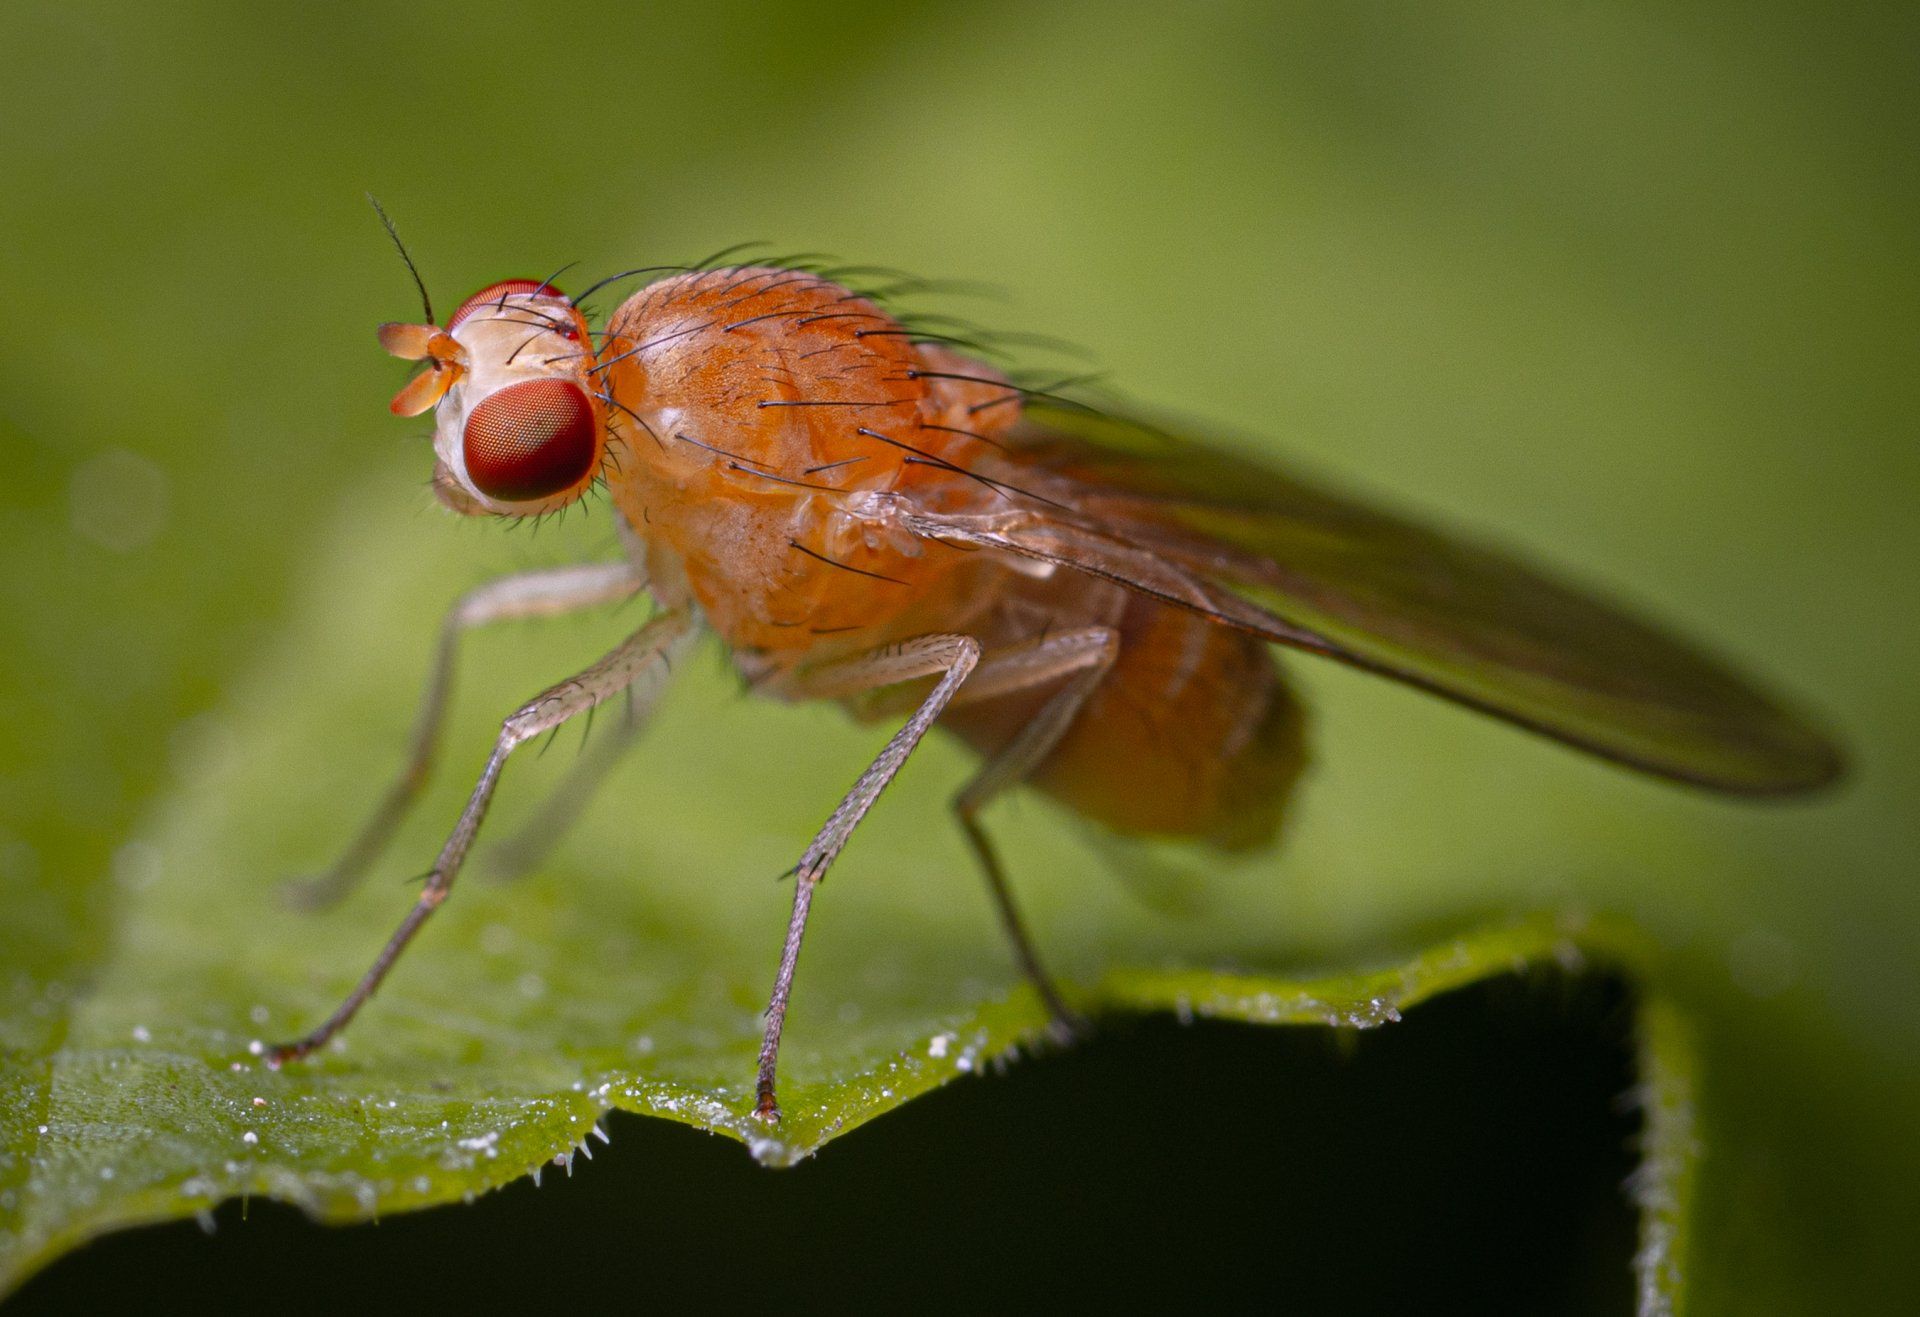 a fruit fly